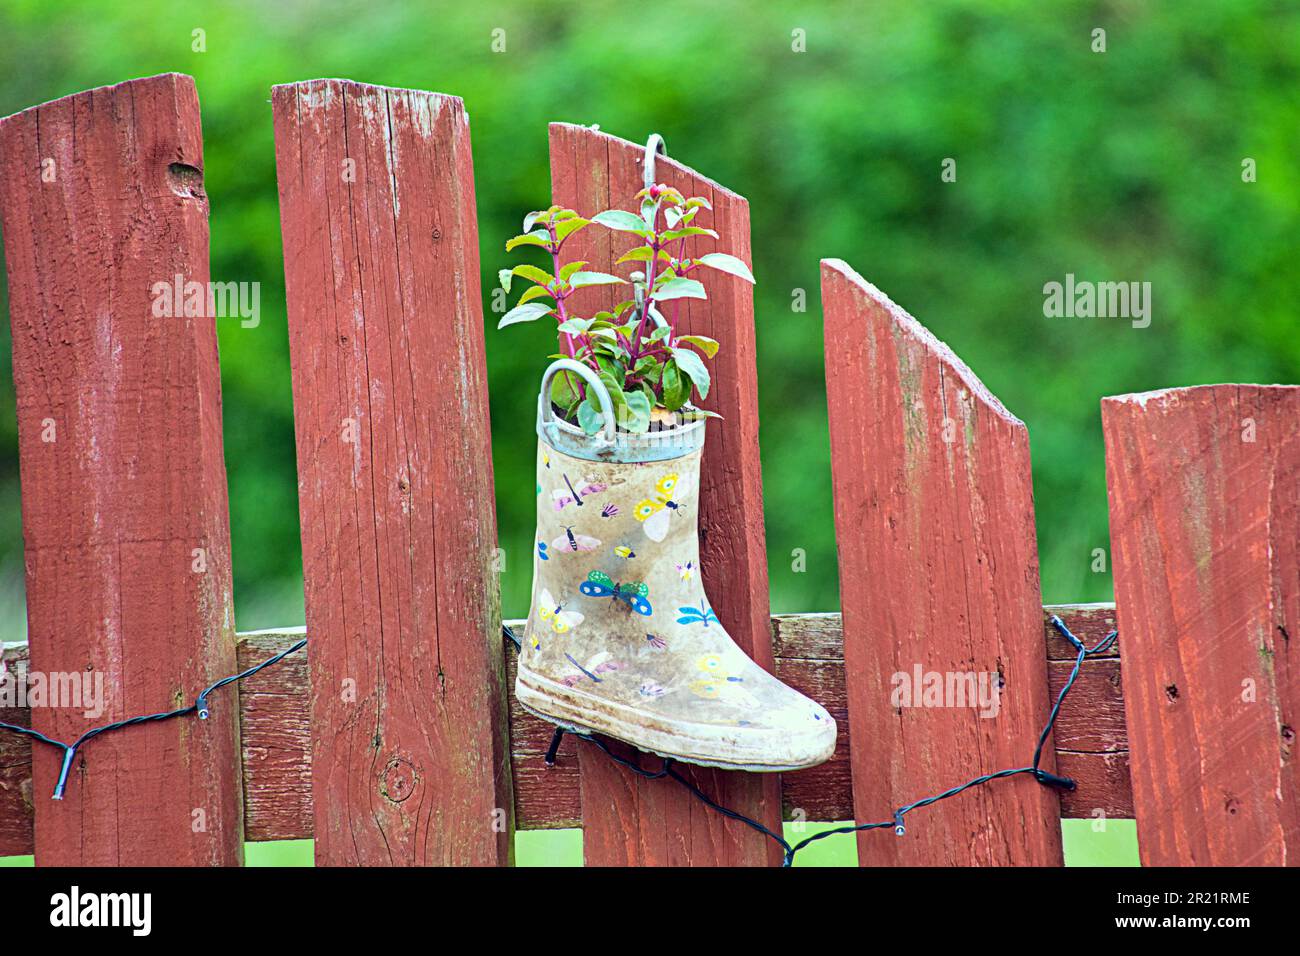 Gartenpflanzen in Kinderwelltons, um bunte Gartendekorationen als Töpfe zu machen Stockfoto